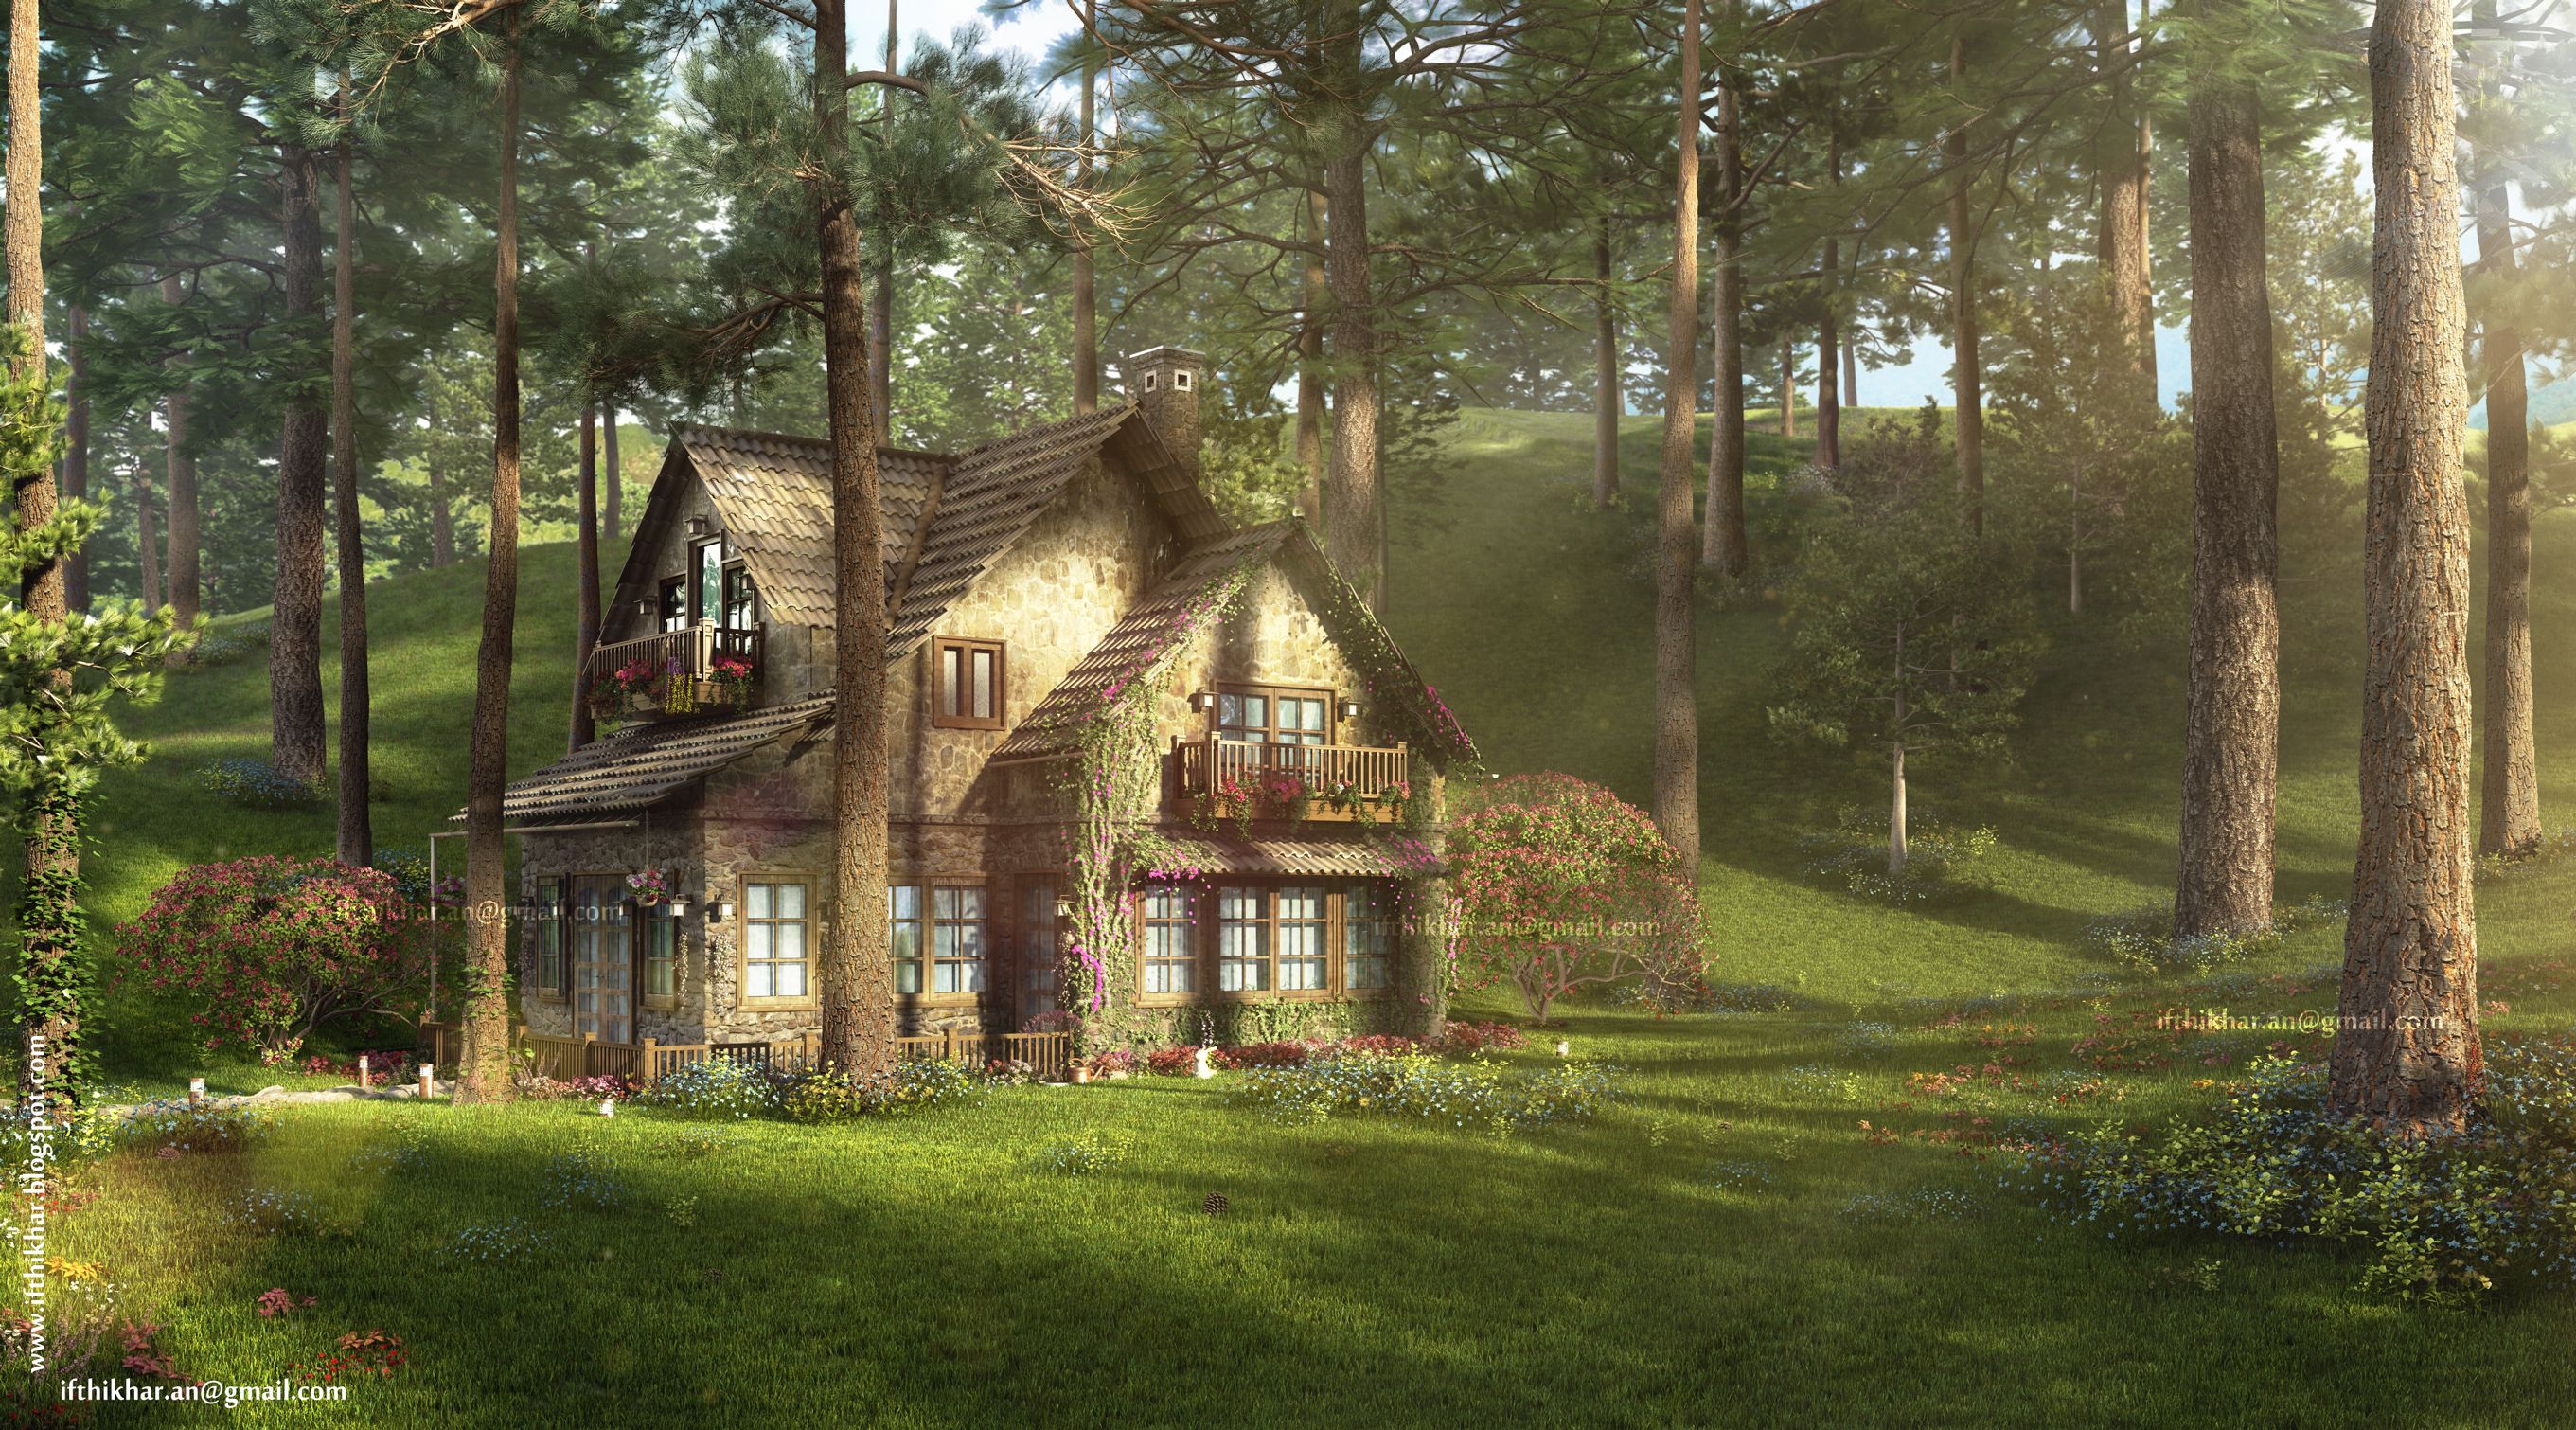  домики в лесу:  домики комплекса Chateauux dans les .